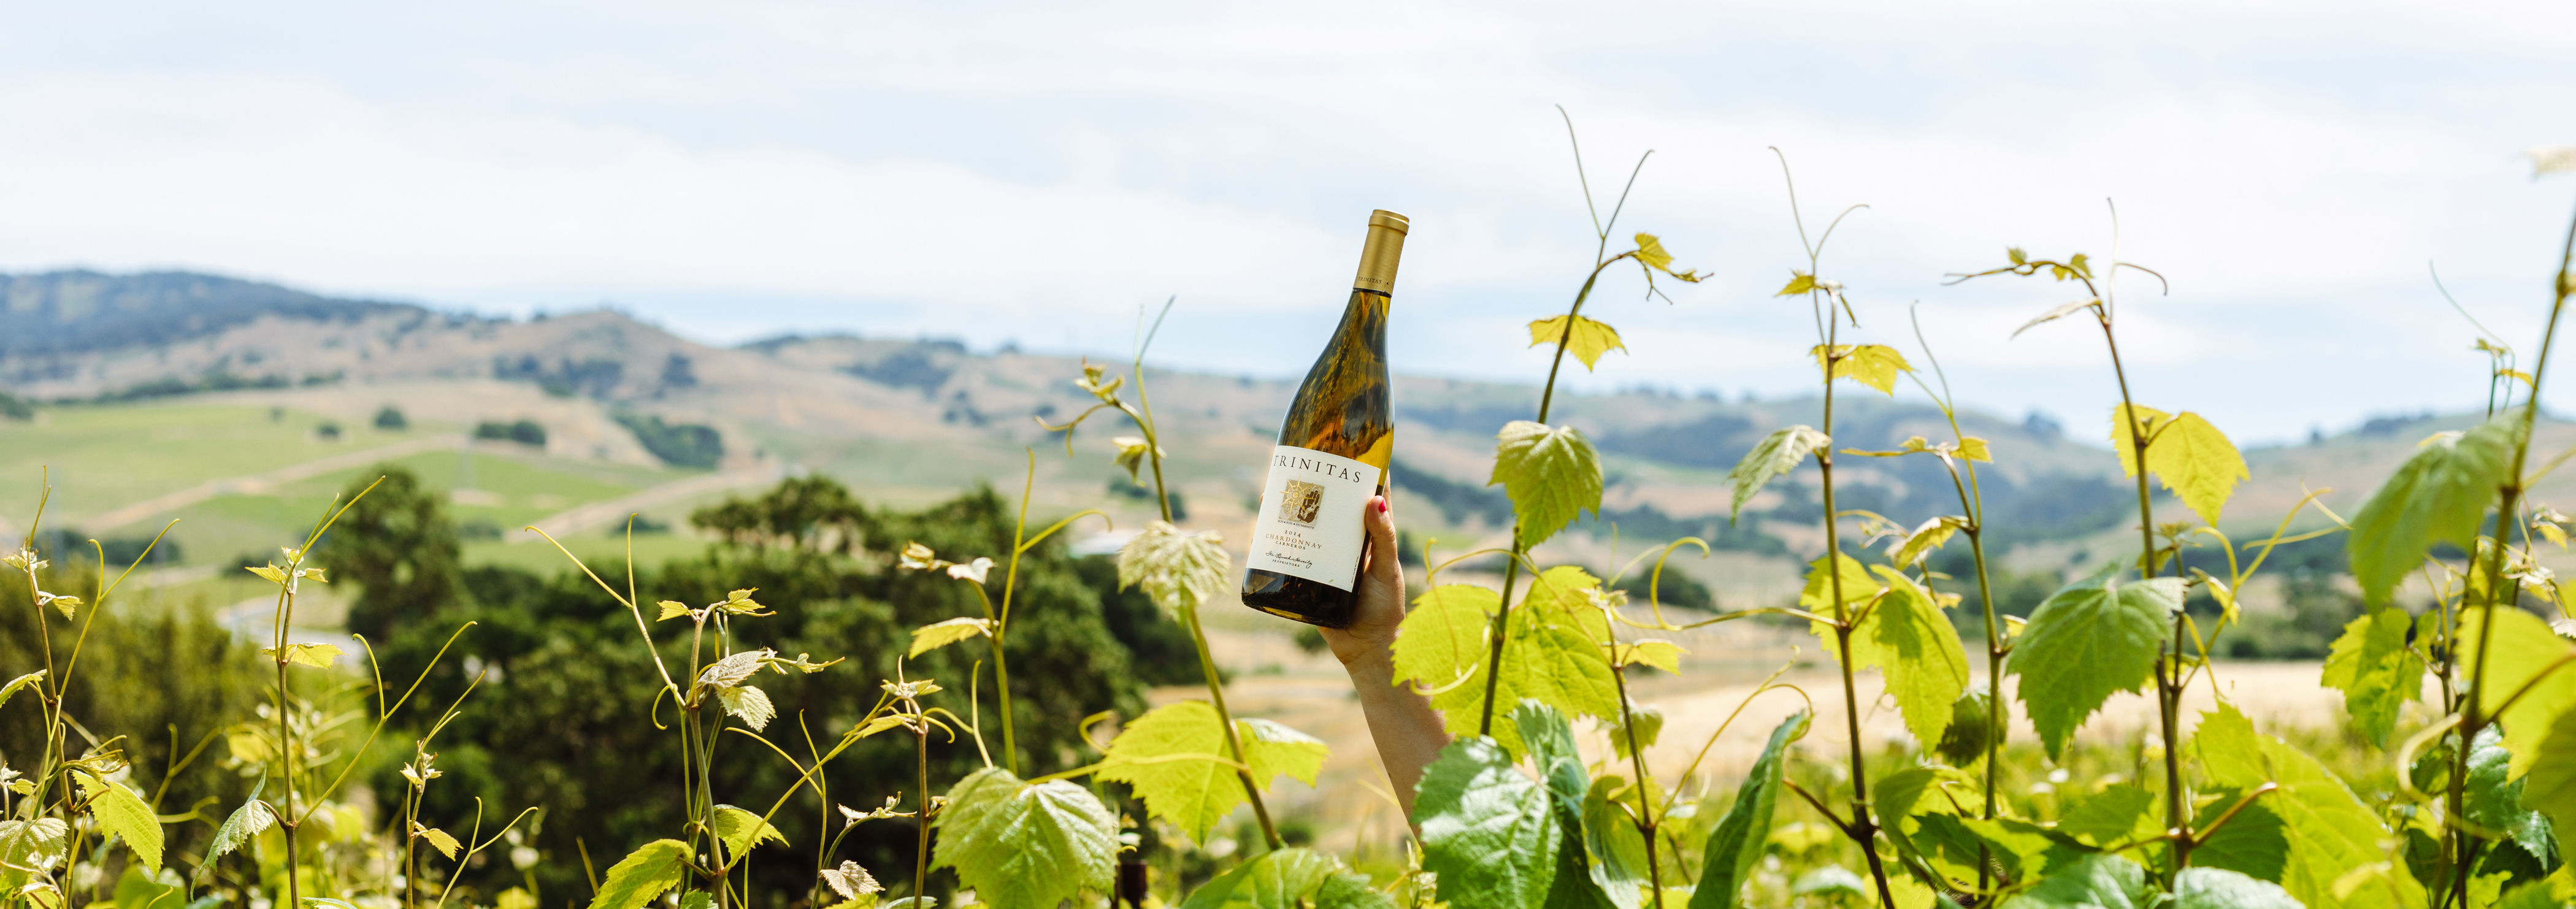 wine bottle in vineyard